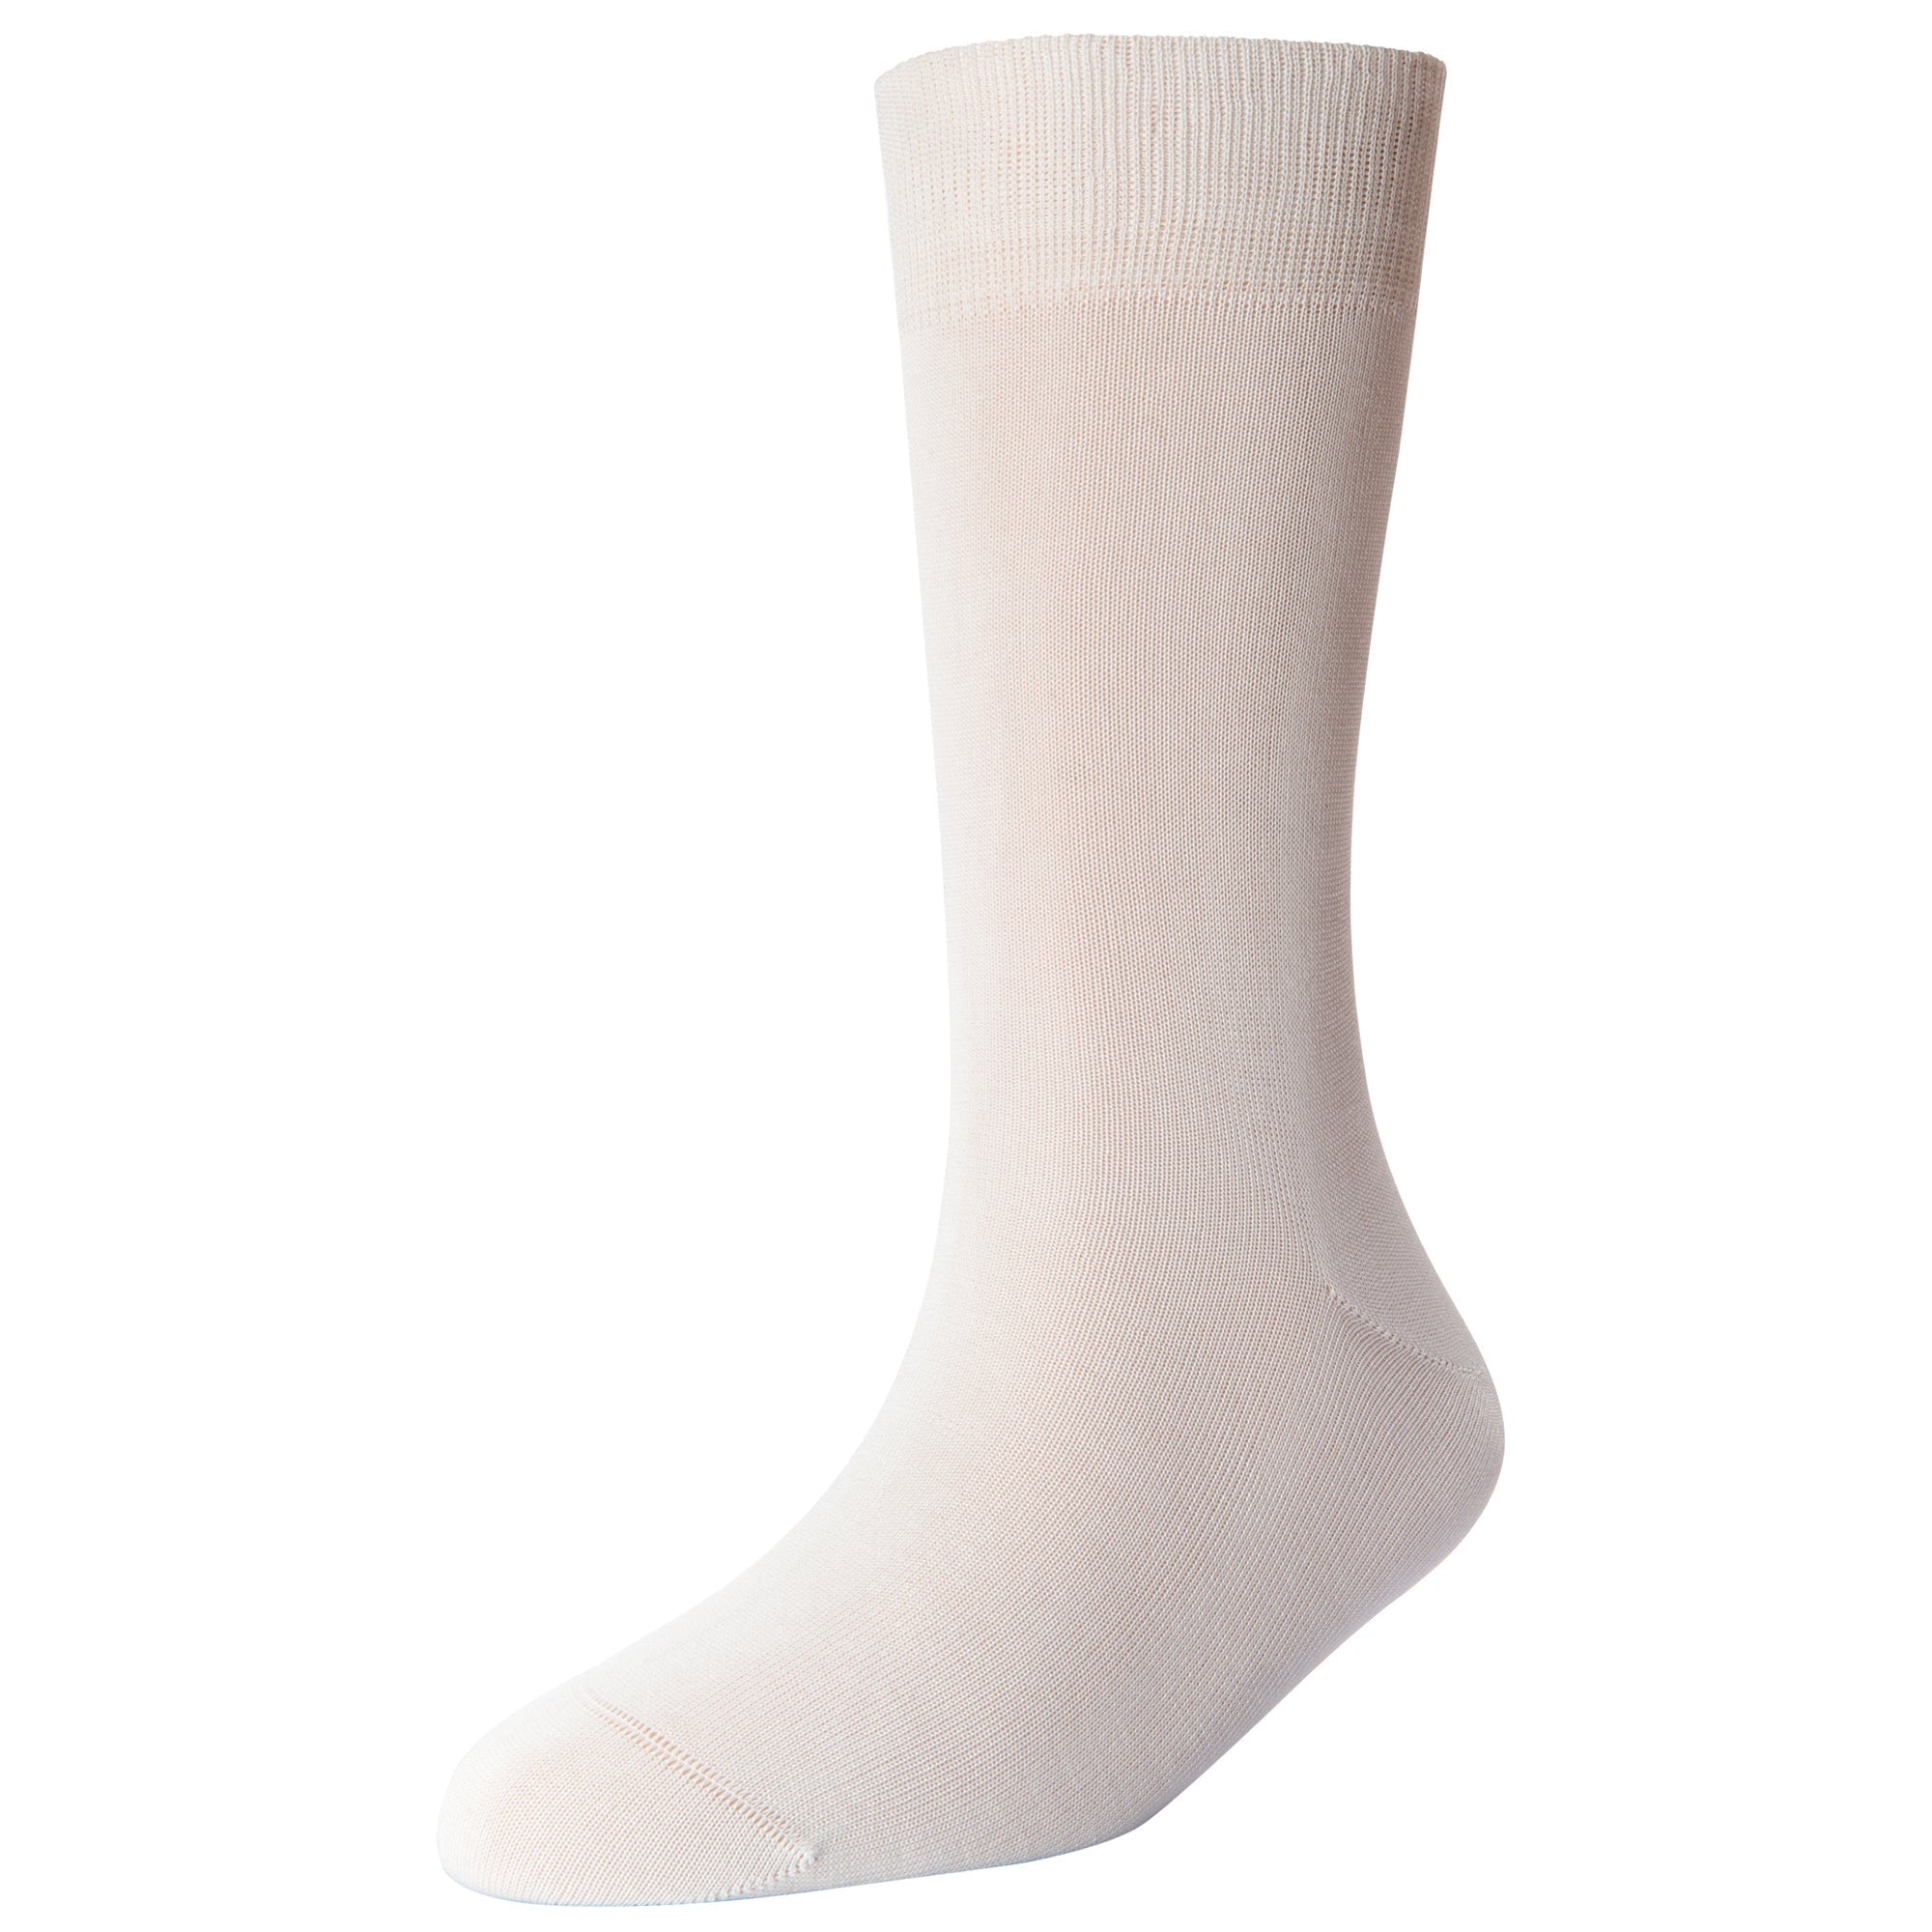 Men's Sports Standard Length Socks